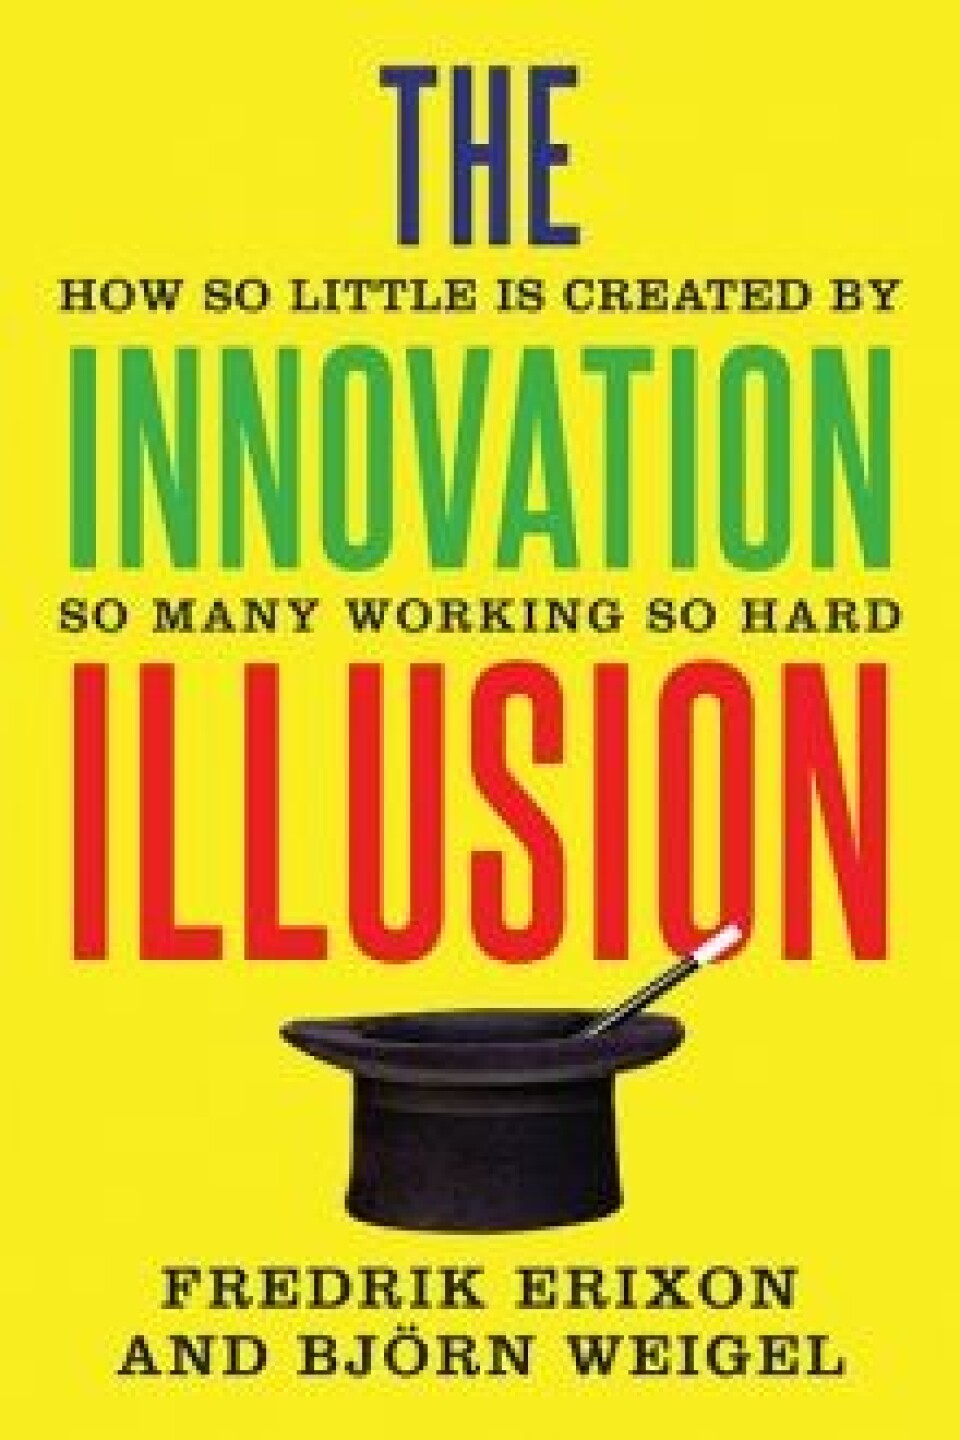 De svenske økonomene Fredrik Erixon og Bjørn Weigel i boken The Innovation Illusion (Yale University Press, 2016), peker også på tiltakende regulering, som hemmer innovasjon og vekst. Et omseggripende ”føre-var”-prinsipp legger en demper på innovasjonen på en rekke områder. Det er ikke tilfeldig at områdene rundt Washington D.C. er de rikeste i USA, eller at lobby-hovedstedene Washington og Brussel har opplevd den høyeste inntektsveksten i den senere tid. Kampen om reguleringene blir stadig viktigere, og store, etablerte selskaper har lettere for å få sin vilje eller tilpasse seg stadig skjerpede reguleringer.